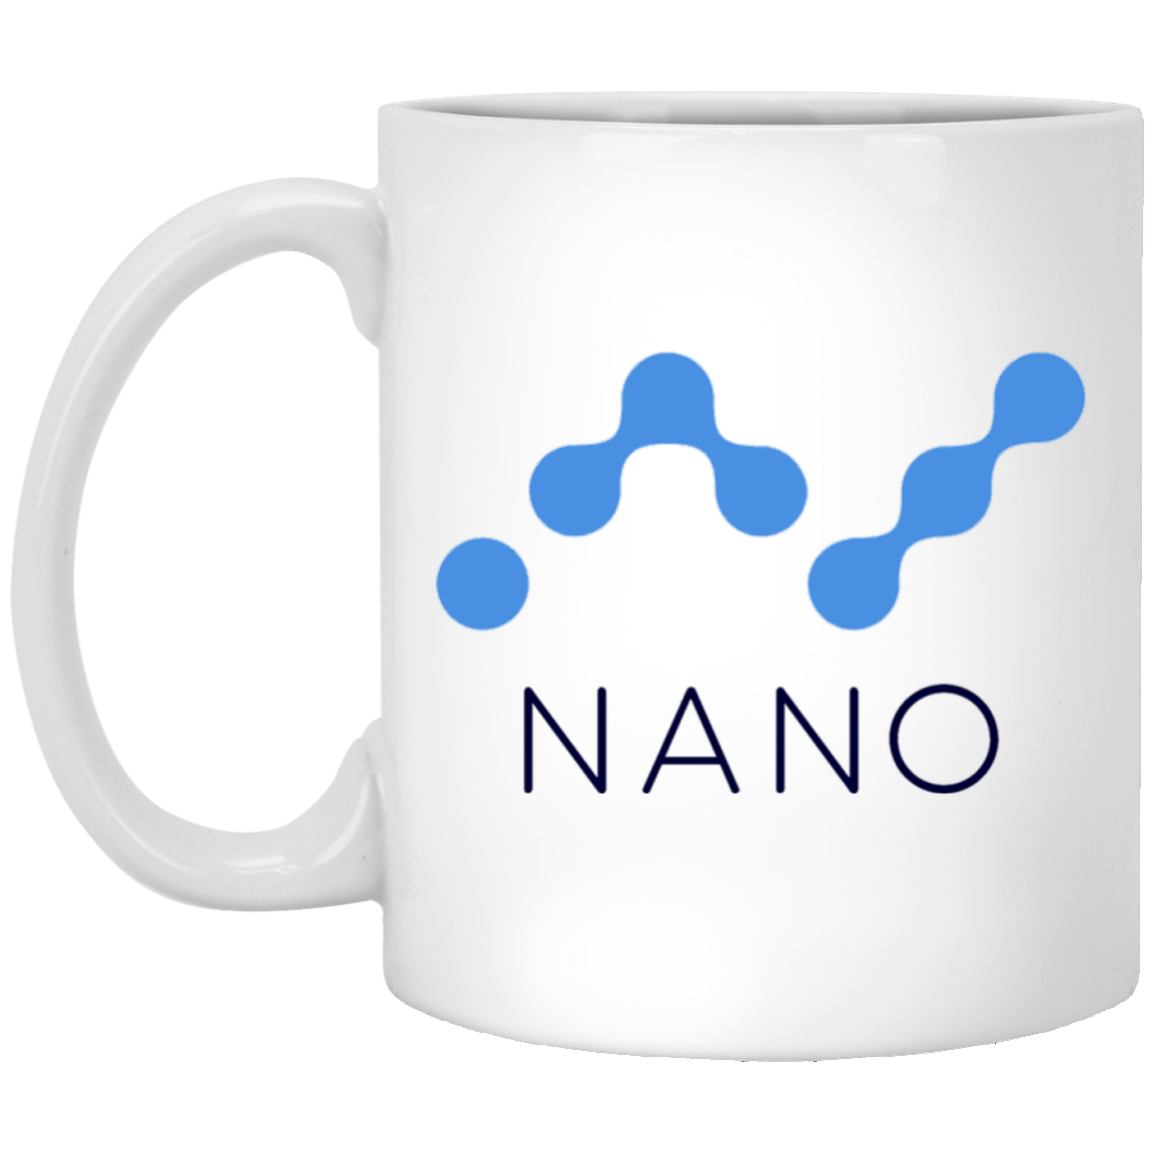 Nano - 11oz. White Mug TCP1607 White / One Size Official Crypto  Merch